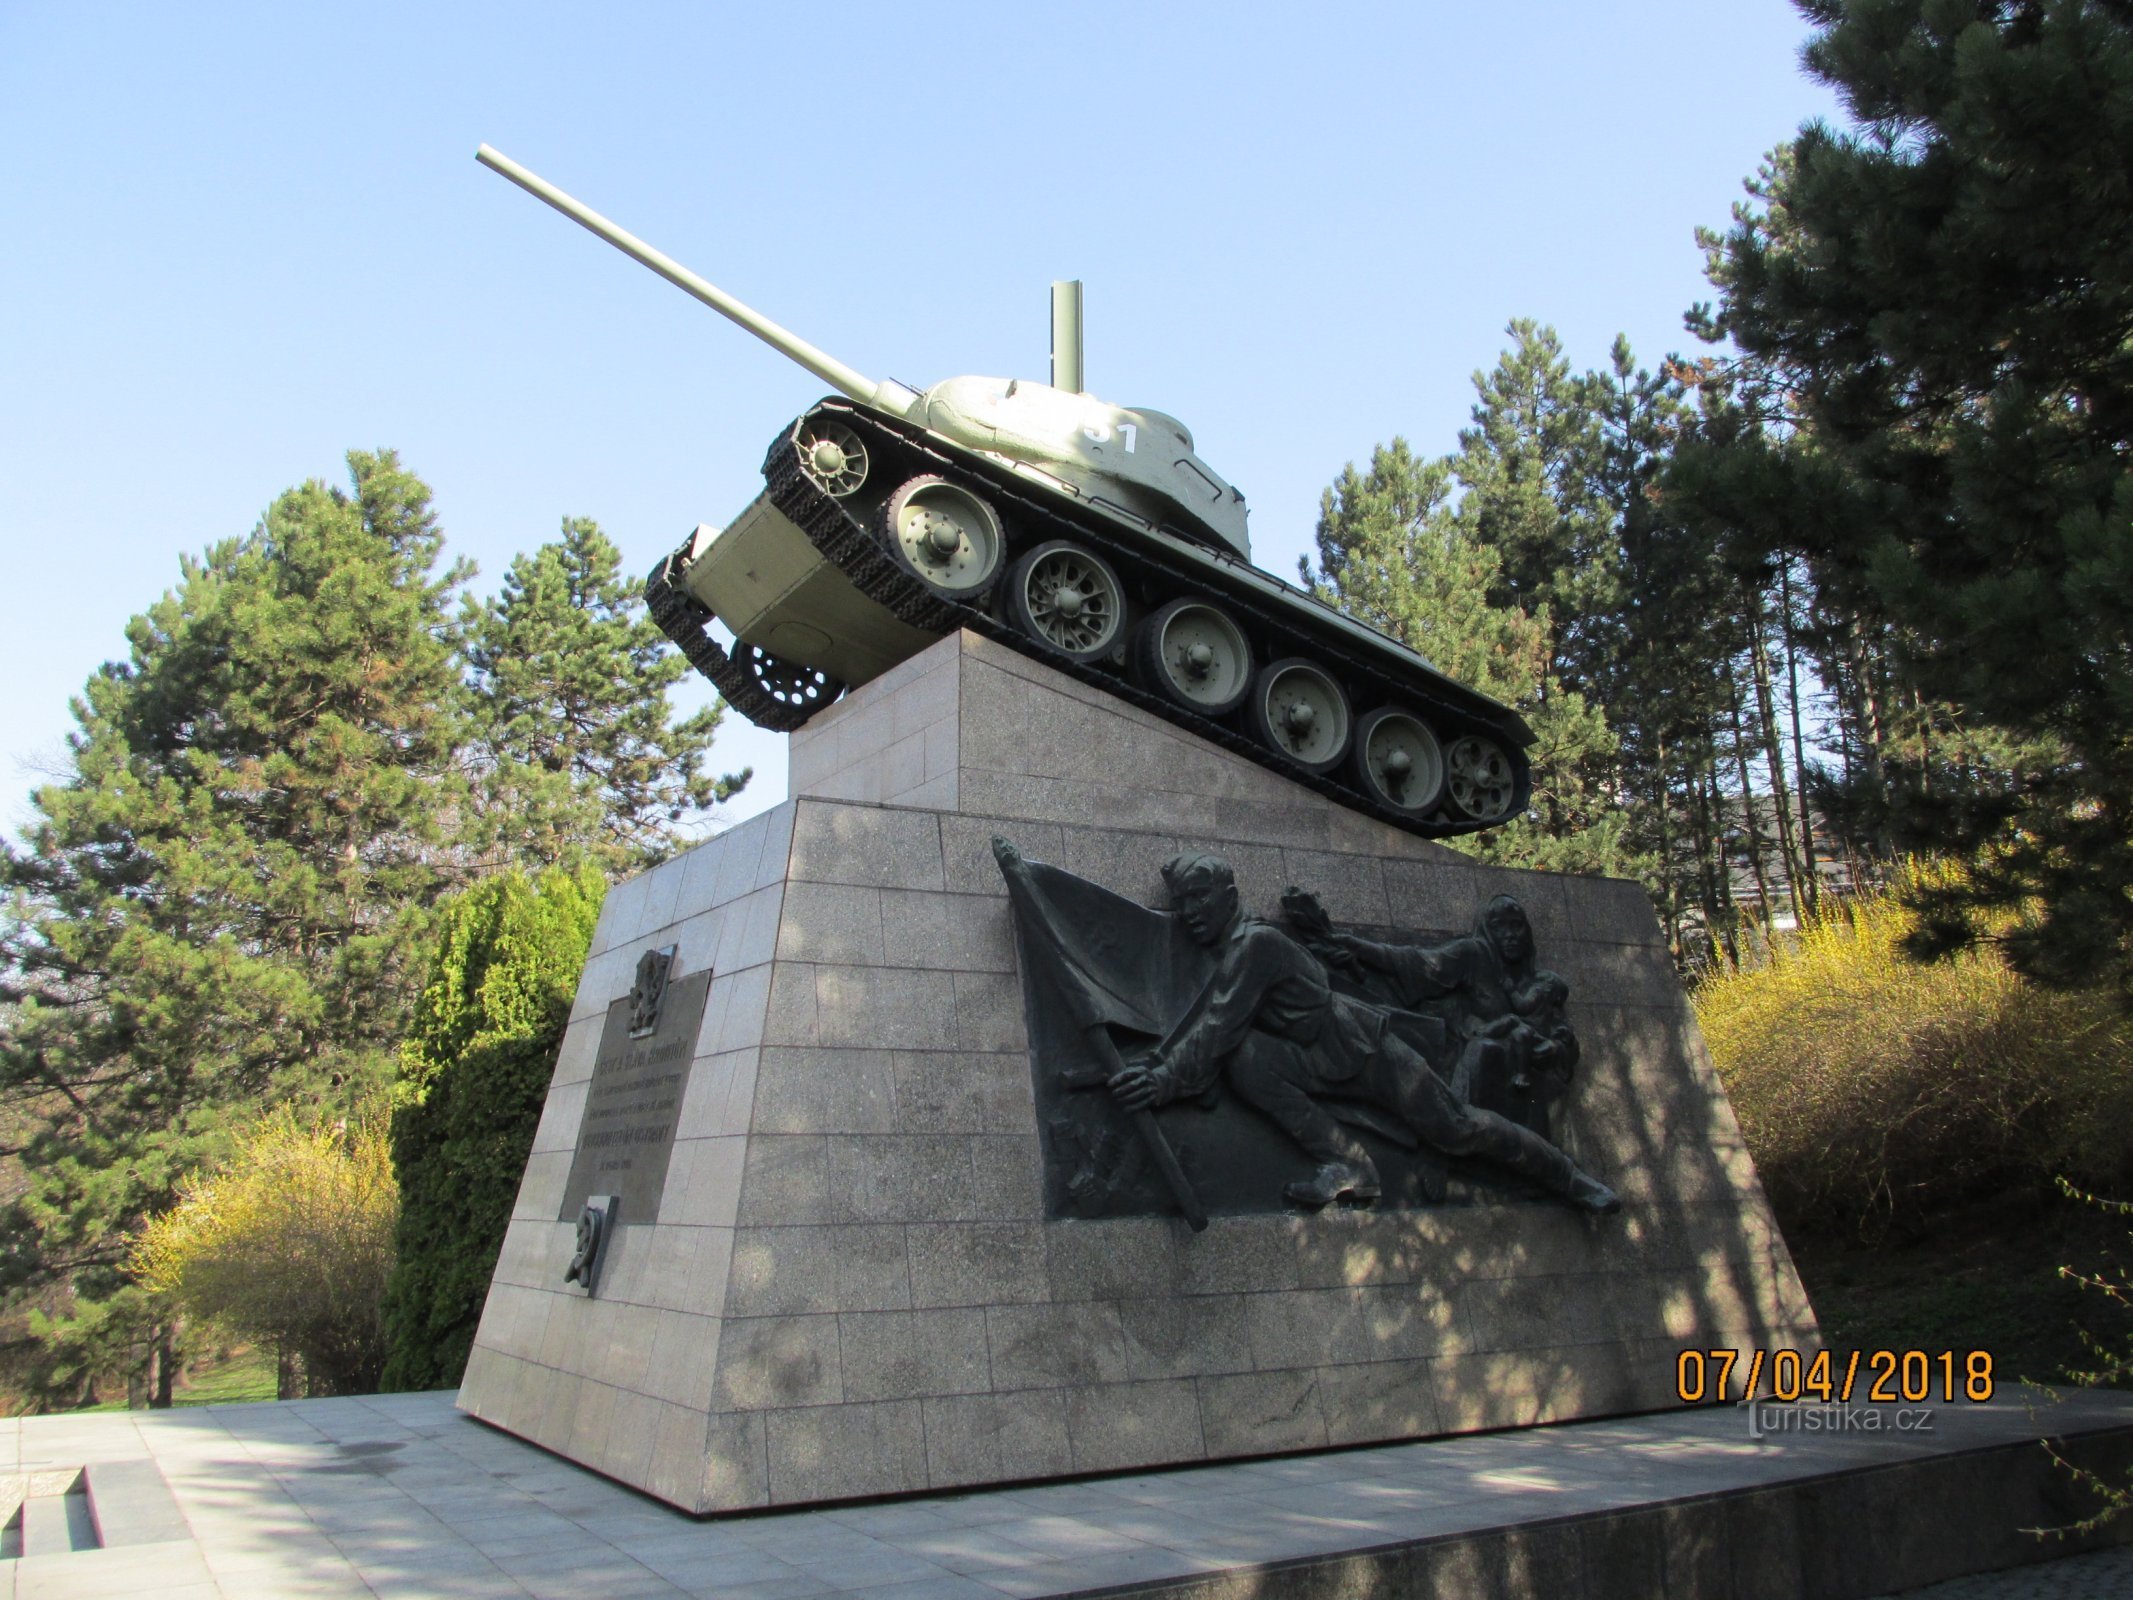 Der Panzer, der Ostrava befreite